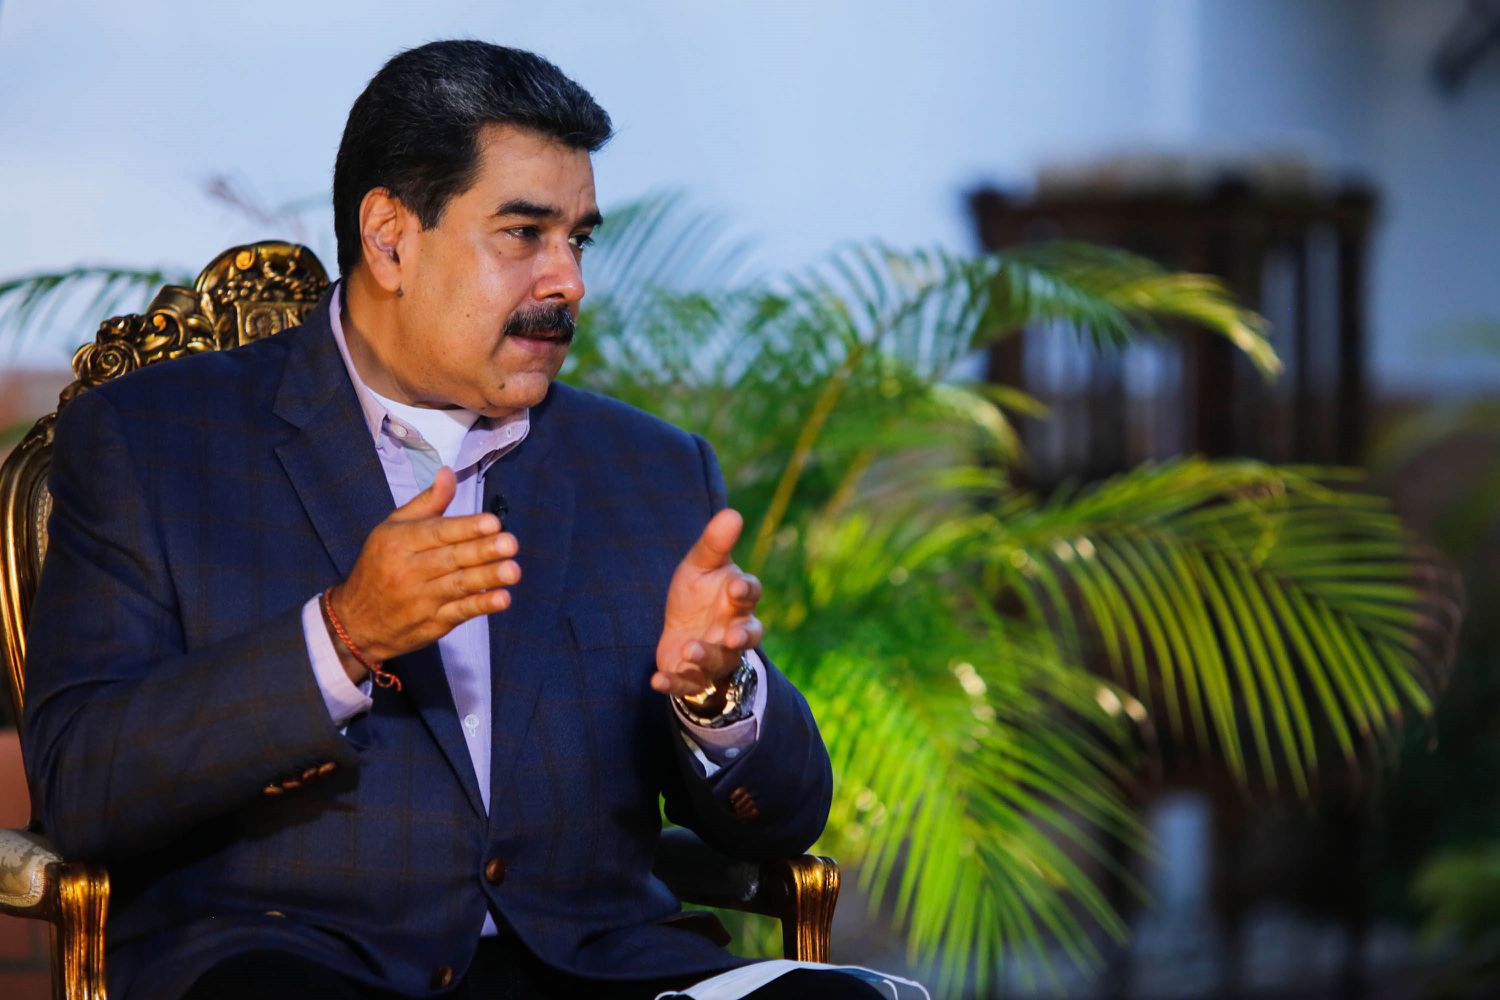 El informe de la ONU sobre Venezuela devuelve vigor a la presión internacional contra Maduro